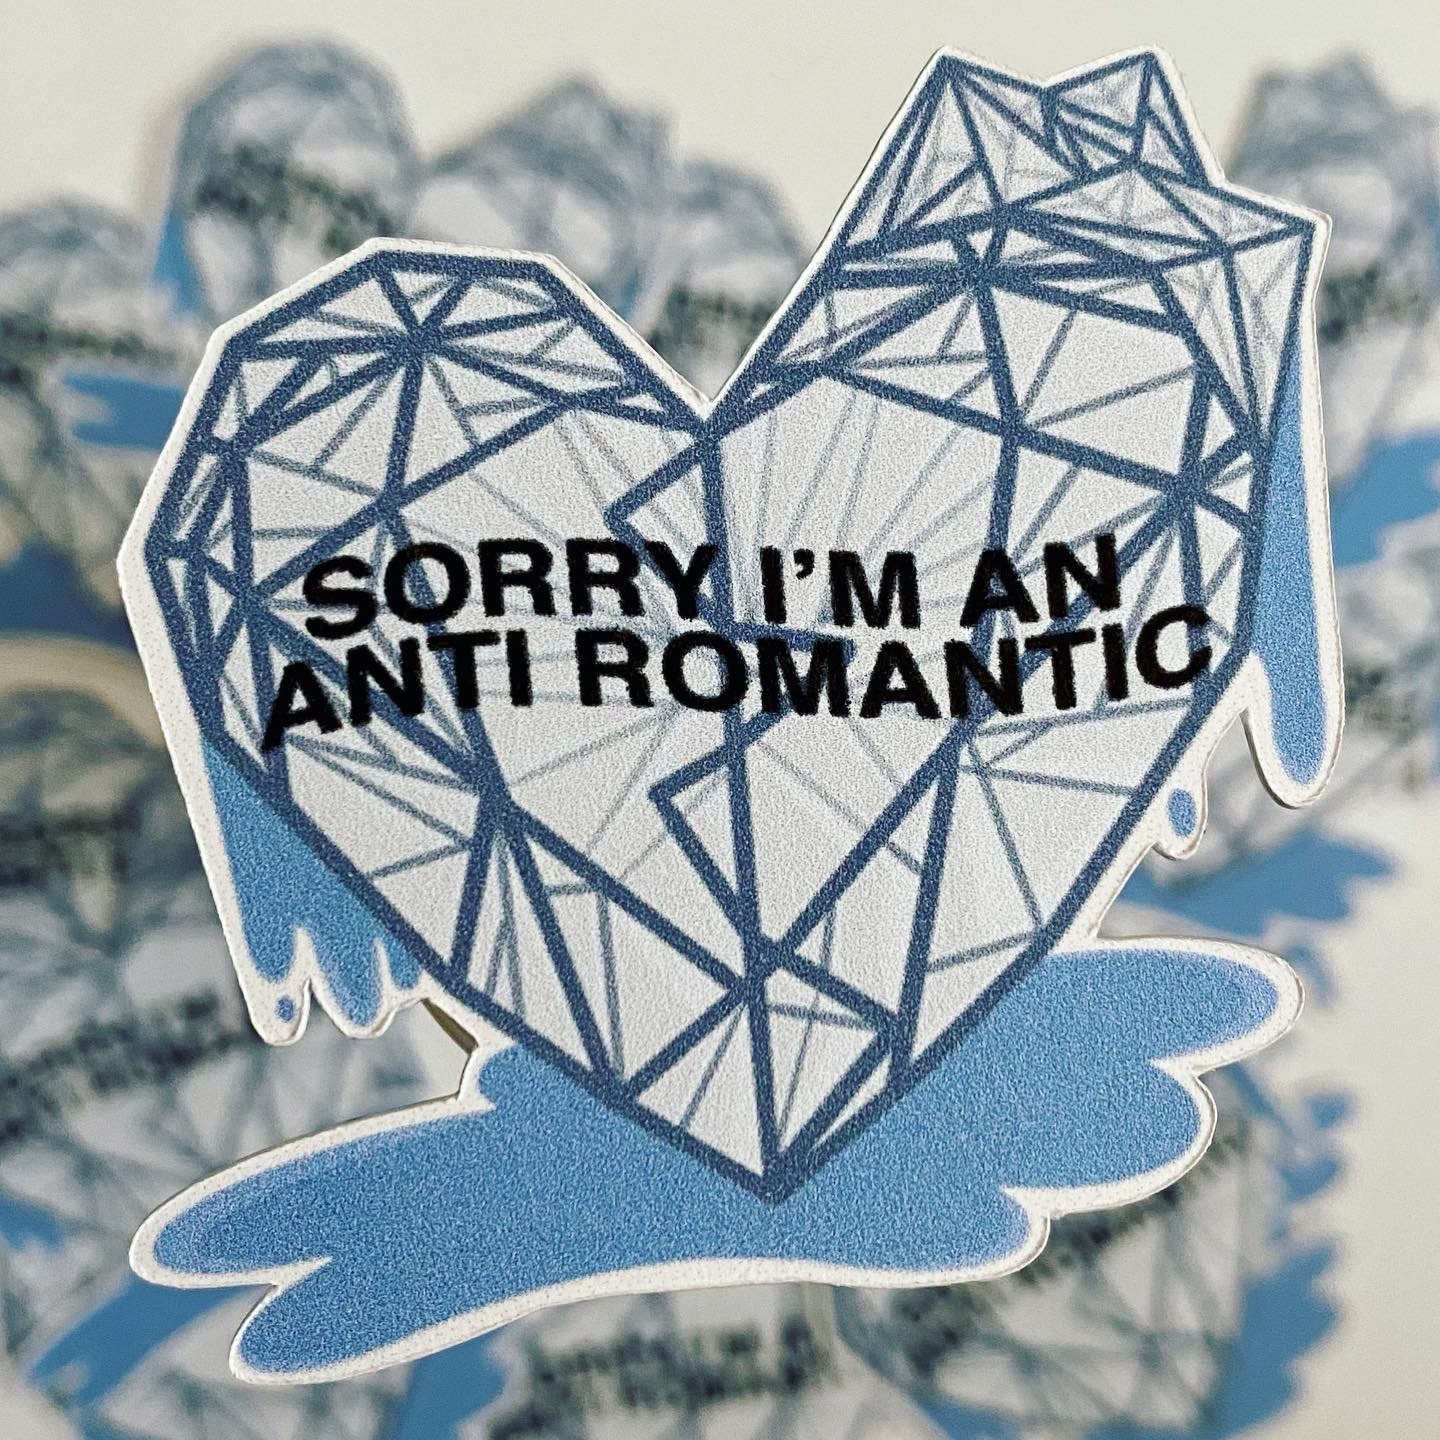 Anti romantic